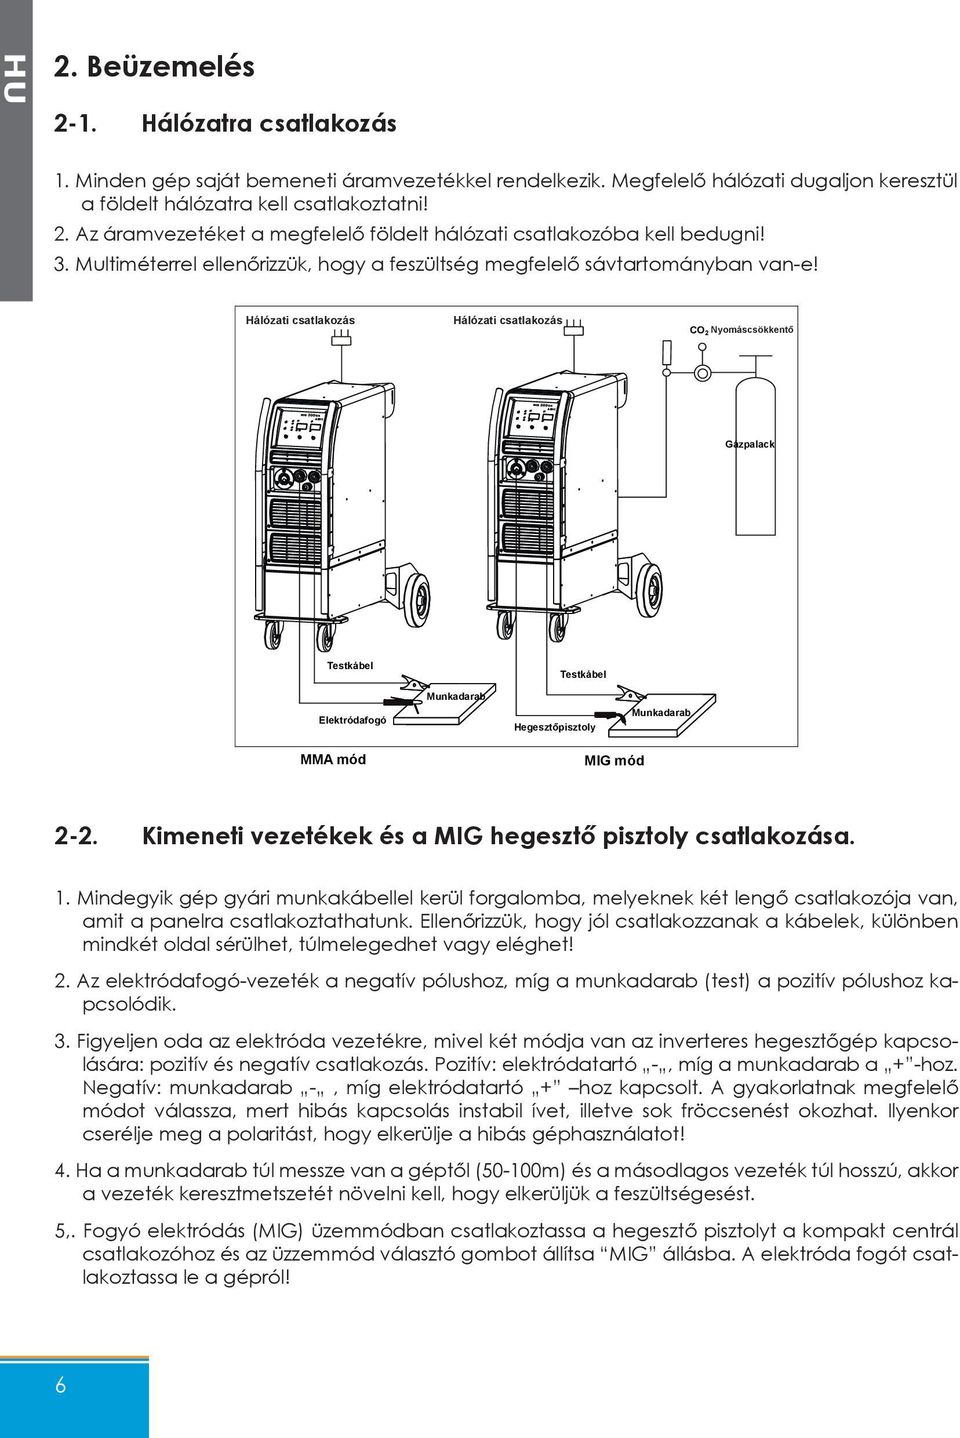 Hálózati csatlakozás Hálózati csatlakozás CO2 Nyomáscsökkentő Gázpalack Testkábel Testkábel Elektródafogó Munkadarab Hegesztőpisztoly Munkadarab MMA mód MIG mód 2-2.